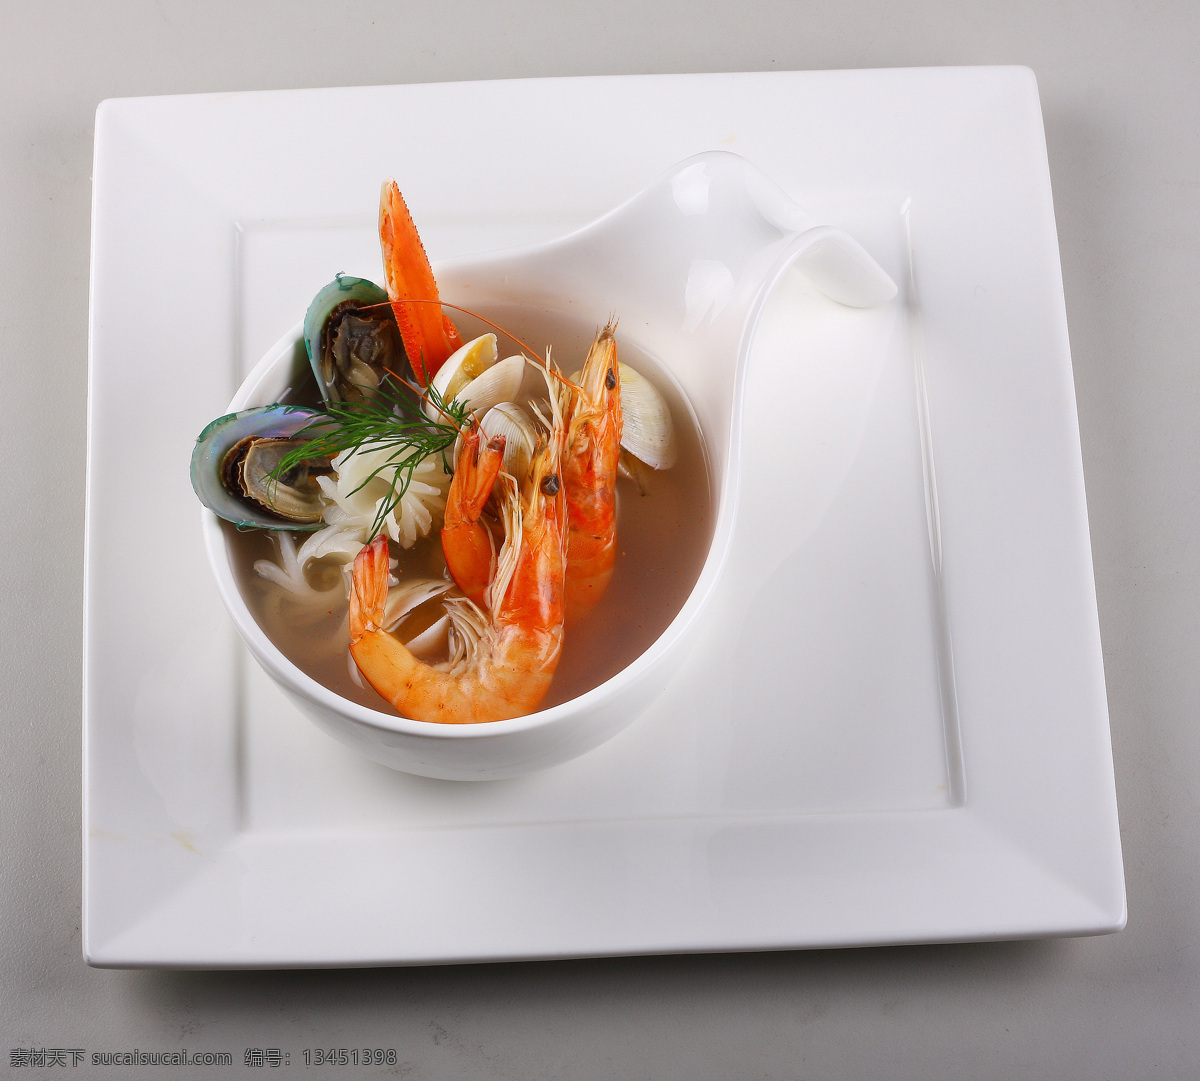 海鲜蛤蜊汤 蛤蜊汤 西餐美食 餐饮美食